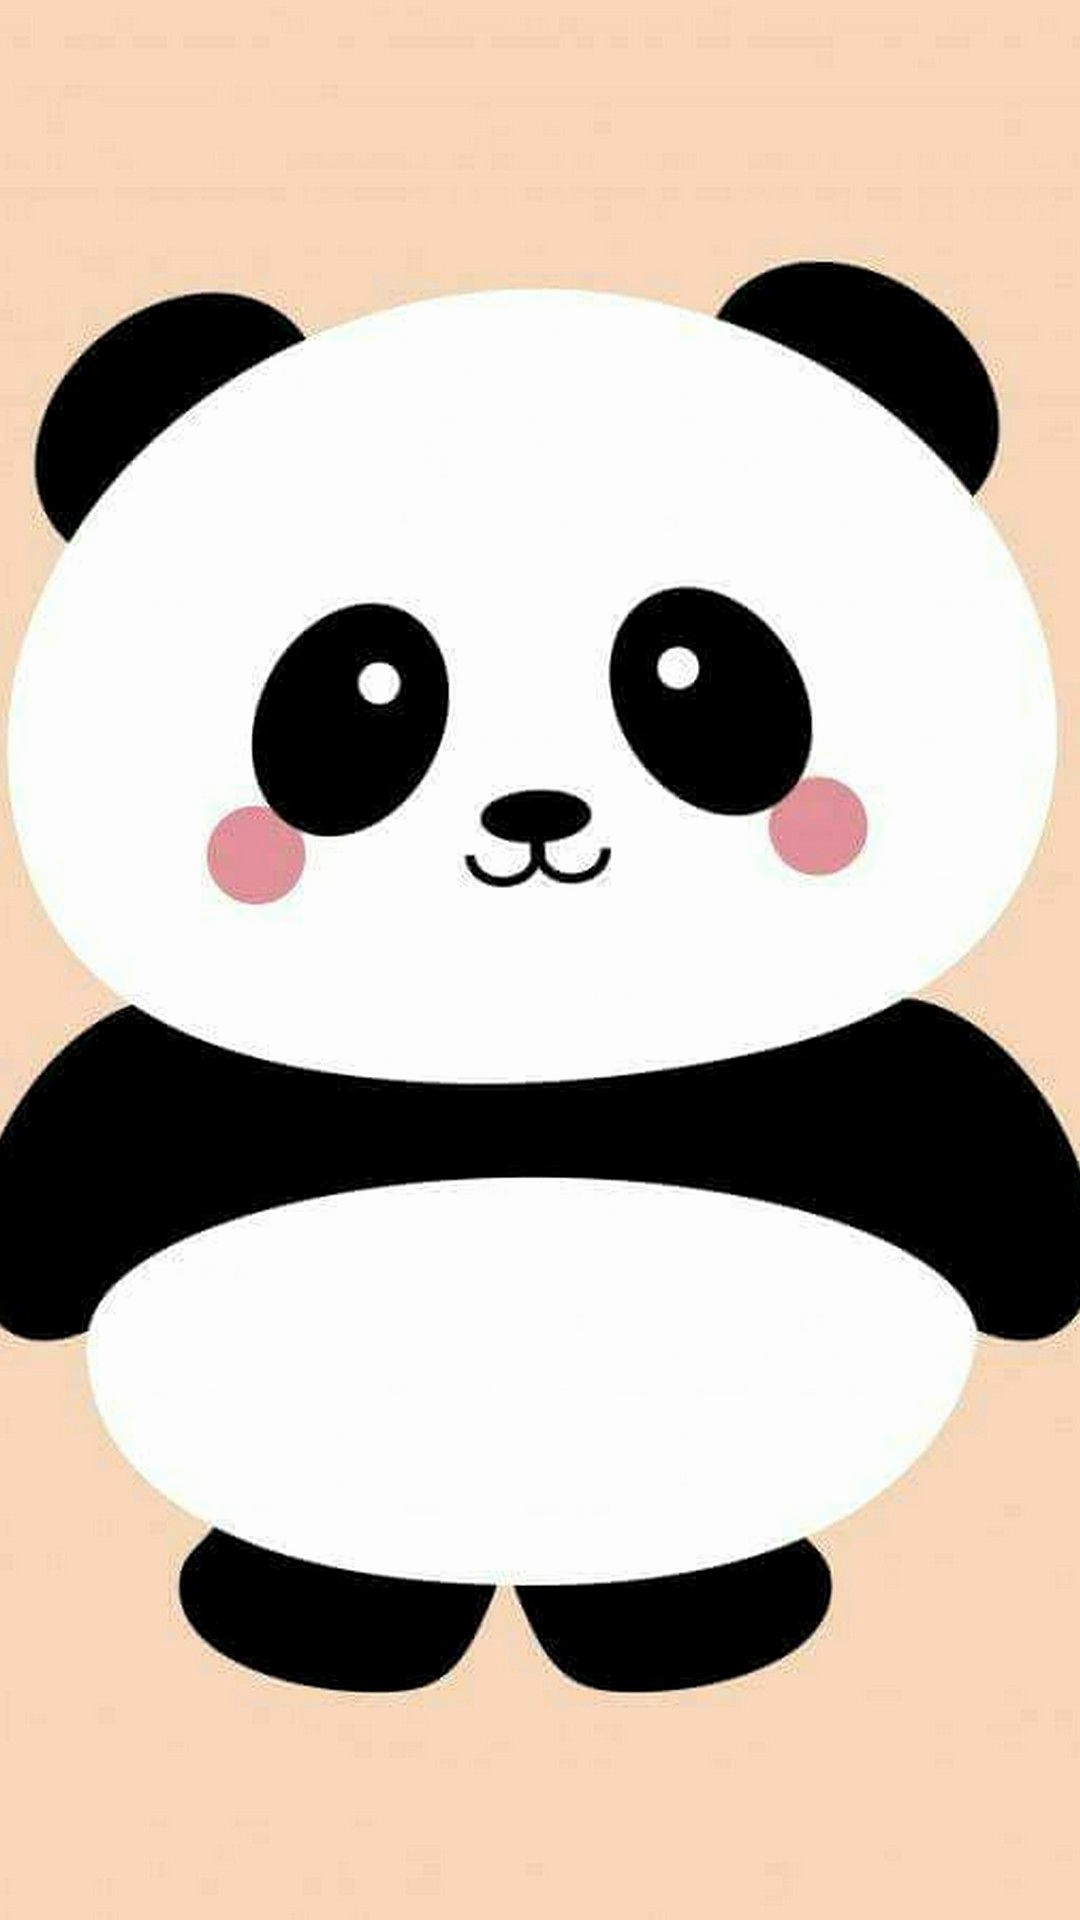 Cute Cartoon Panda Data-src /w/full/1/b/7/445115 - Cute Panda - 1080x1920  Wallpaper 